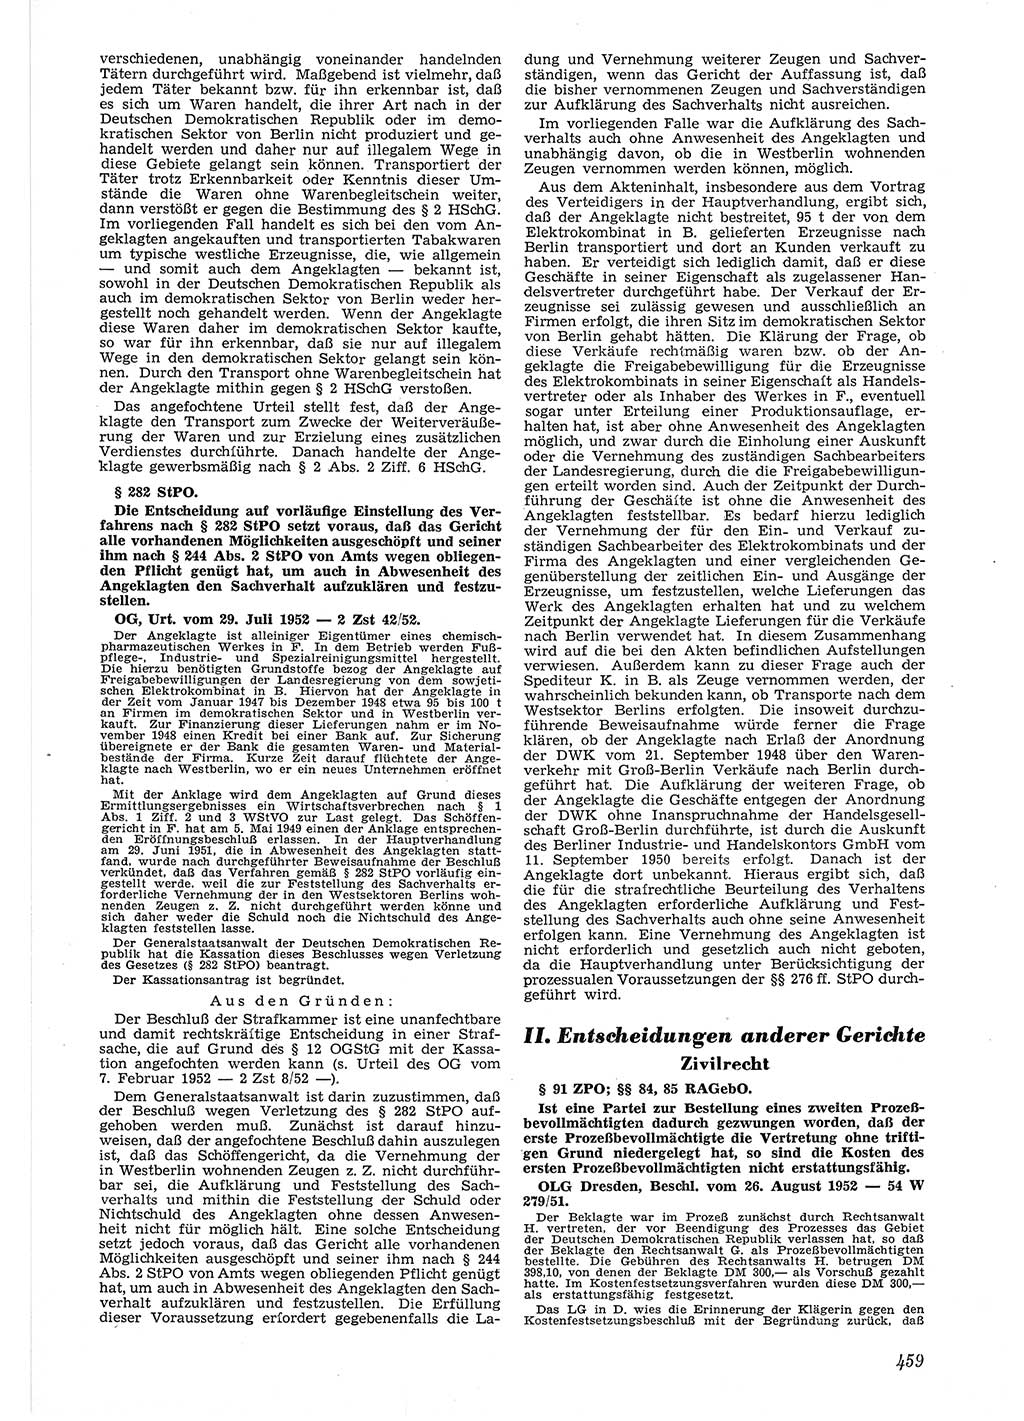 Neue Justiz (NJ), Zeitschrift für Recht und Rechtswissenschaft [Deutsche Demokratische Republik (DDR)], 6. Jahrgang 1952, Seite 459 (NJ DDR 1952, S. 459)